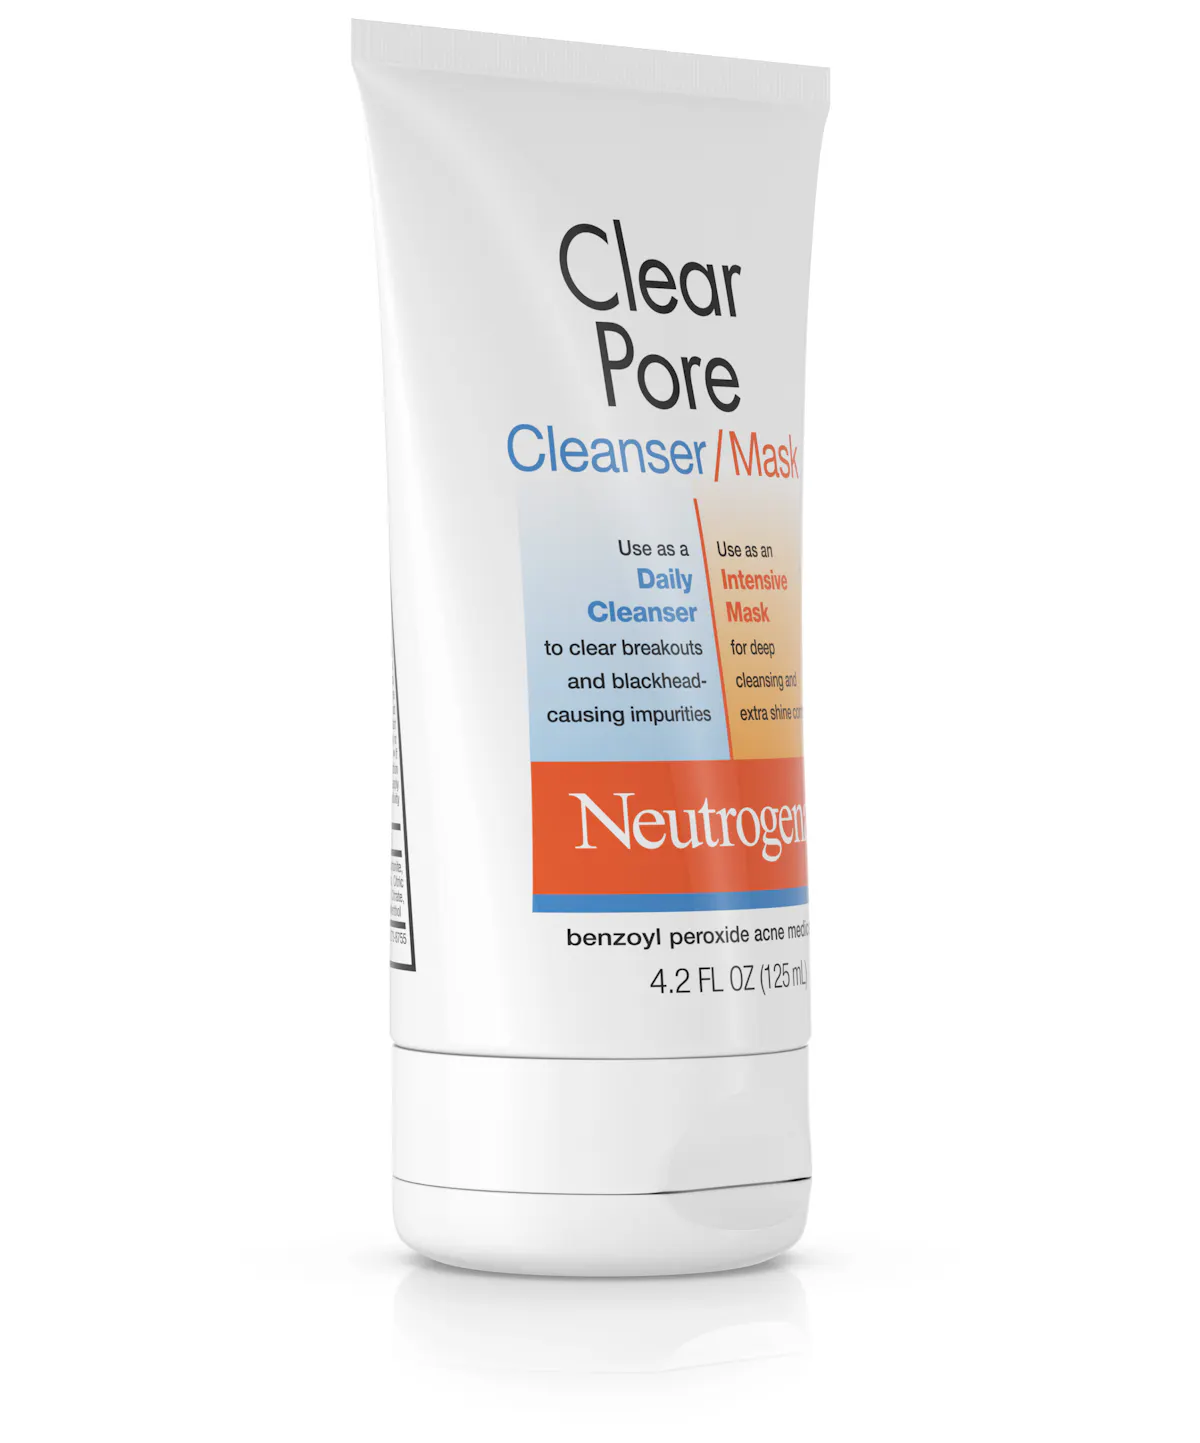 Vergelijken Geleerde Kan worden genegeerd Clear Pore Cleanser/Mask | Neutrogena®